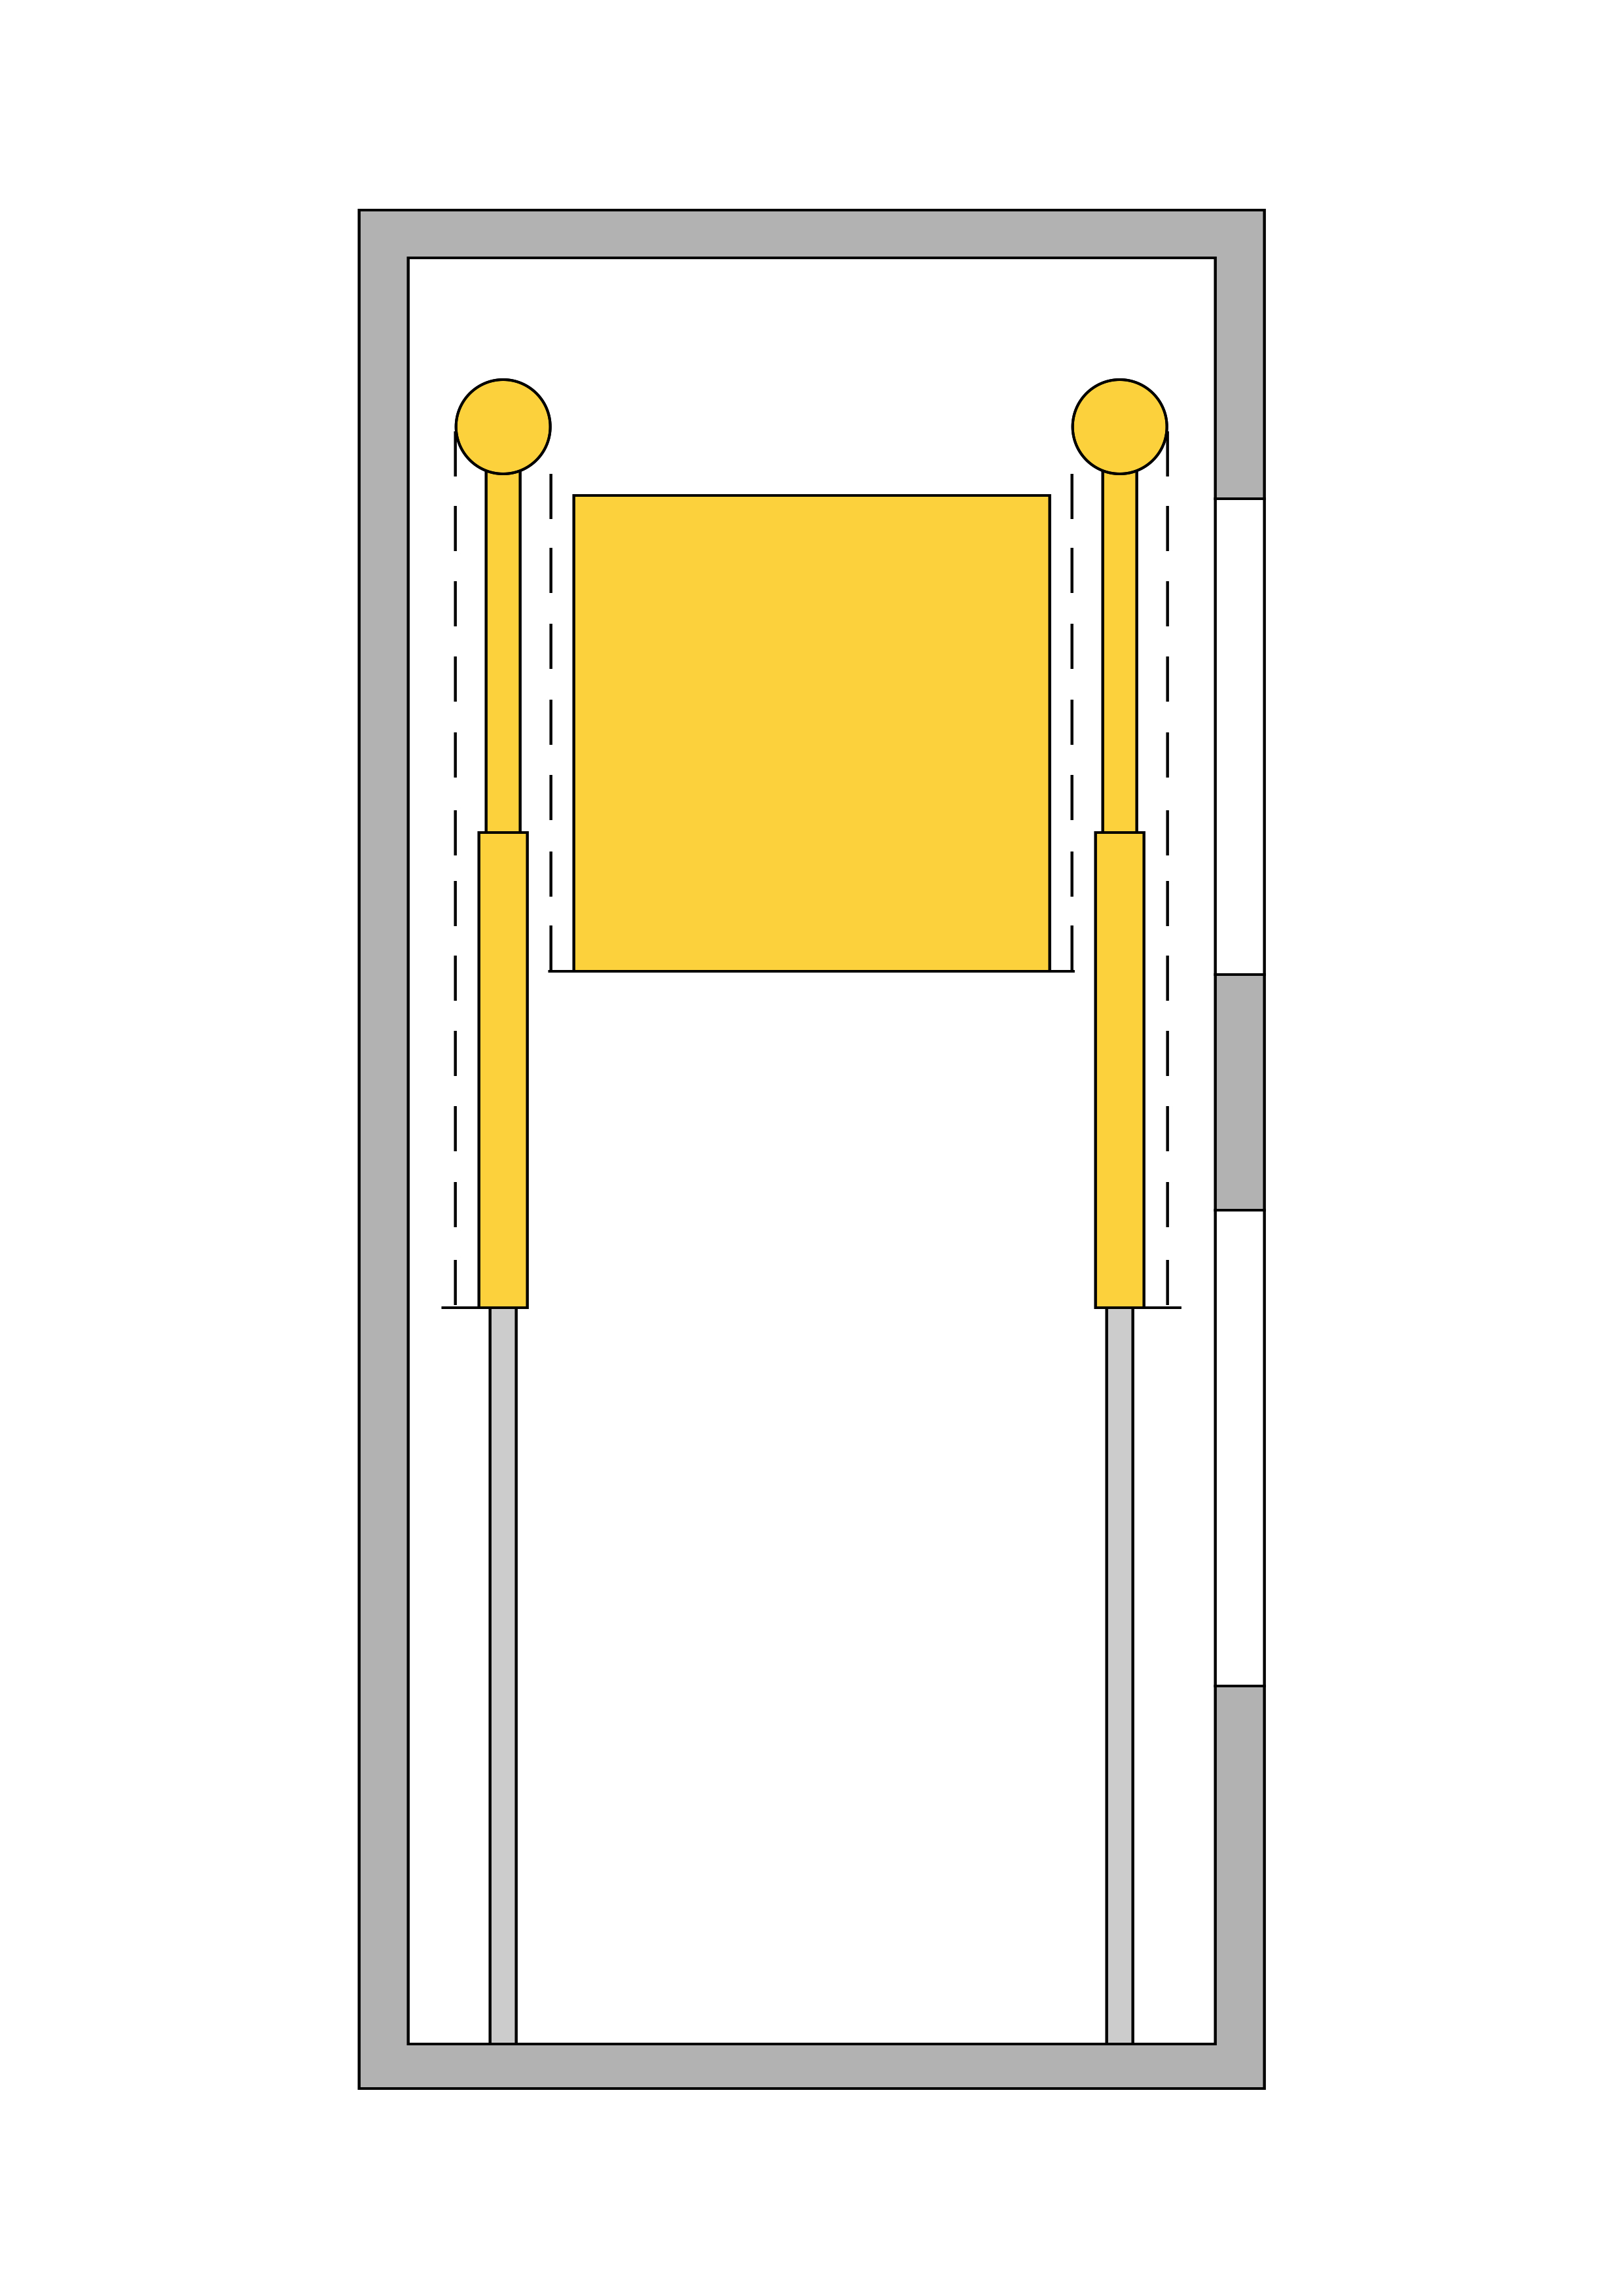 مصعد هيدروليكي مع رافعتين جانبيتين غير مباشرتين، أسطوانة هيدروليكية، رافعة تلسكوبية، مصعد هيدروليكي جانبي